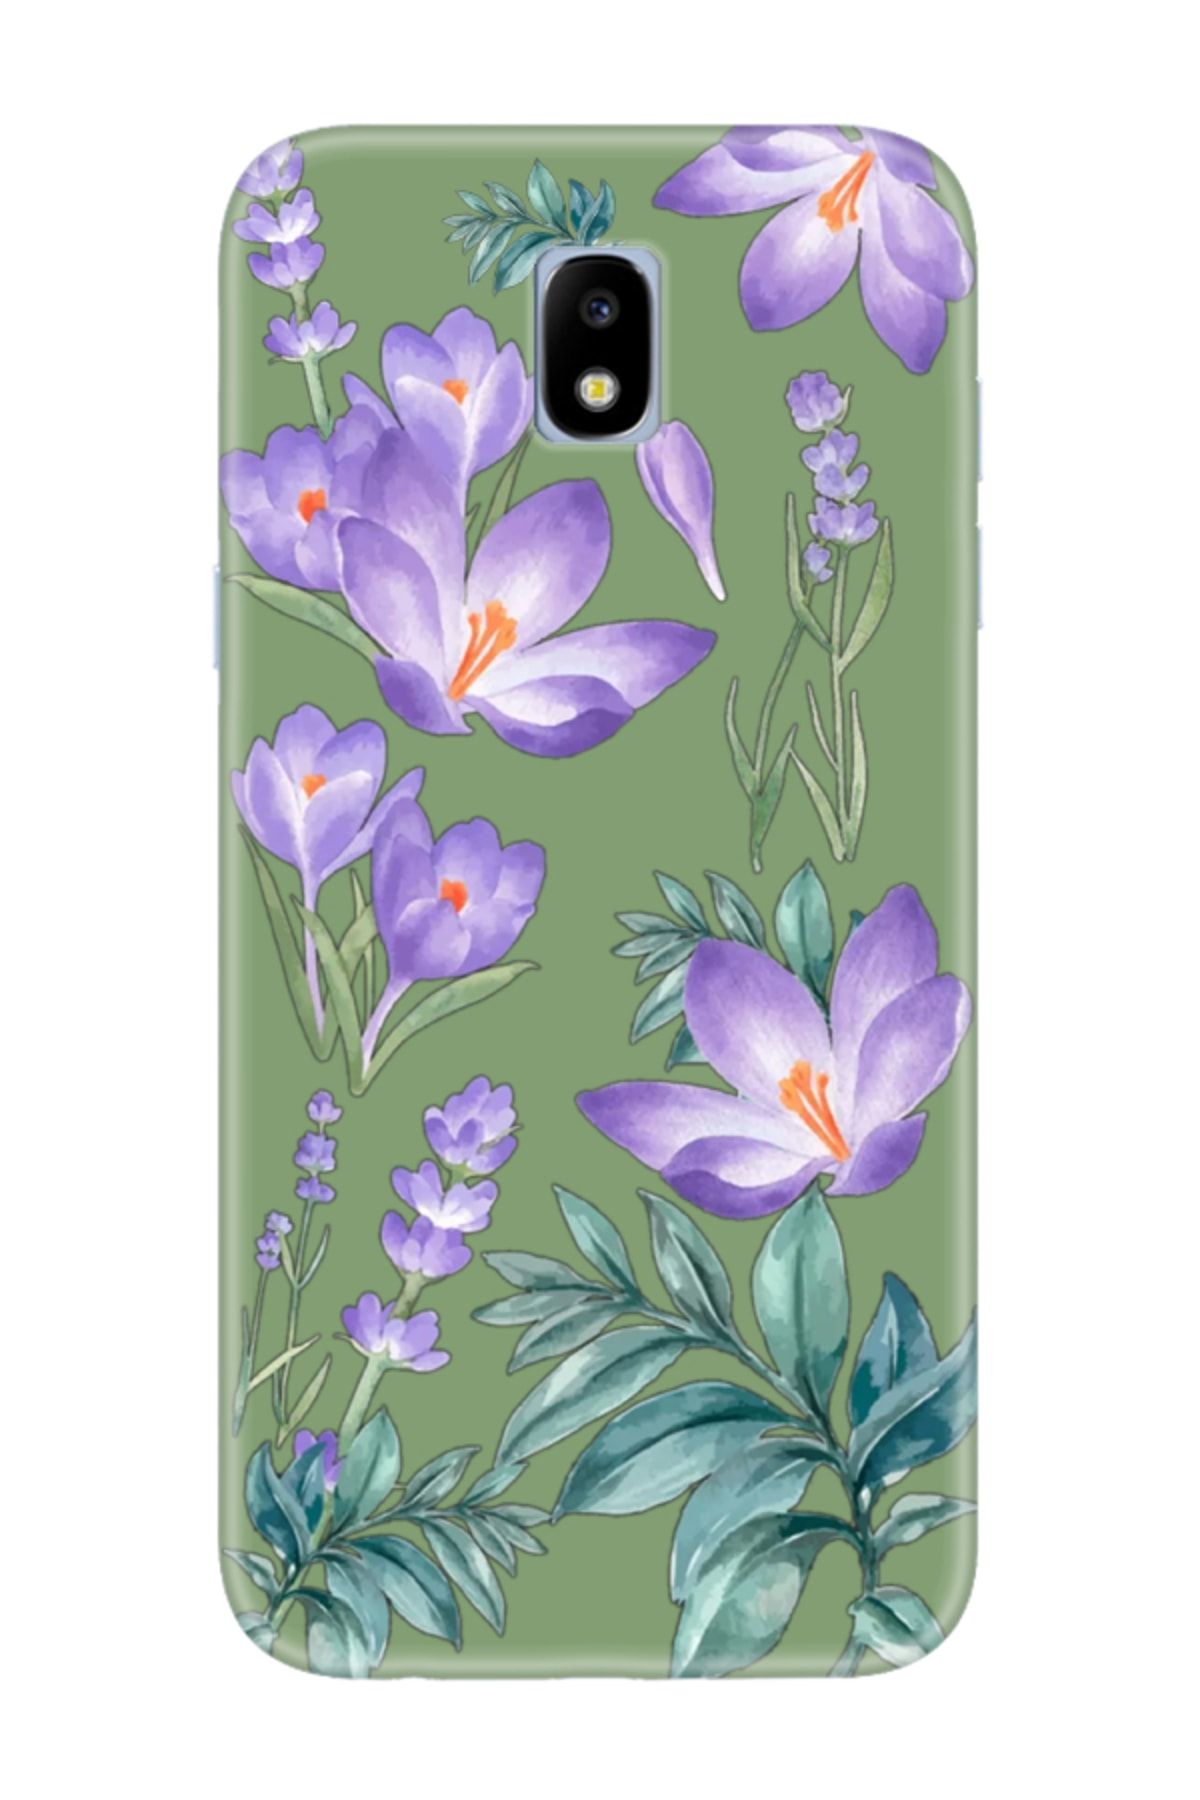 frondcase Samsung J7 Pro Kış Çiçeği Yeşil Telefon Kılıfı